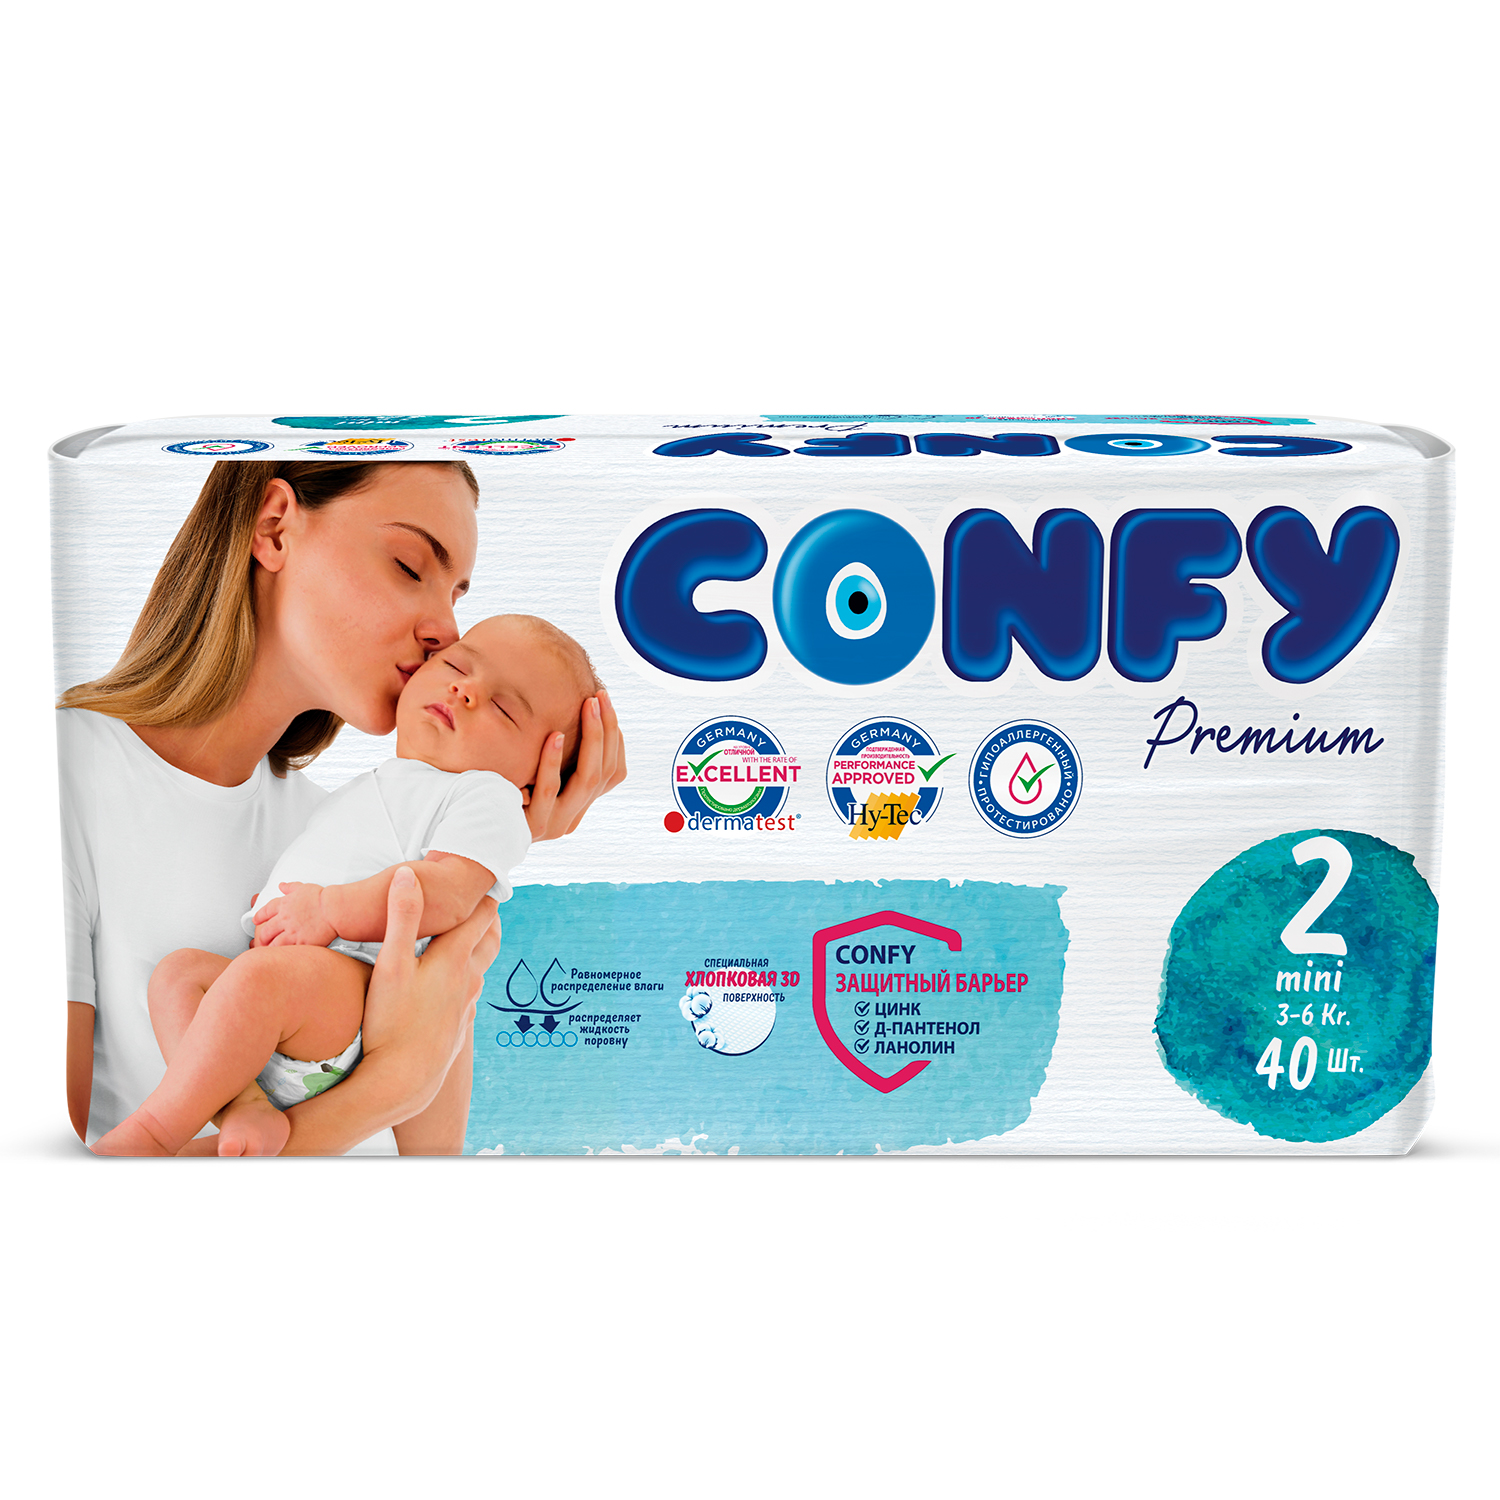 Подгузники детские Confy Premium 3-6 кг (размер 2) памперсы 40 шт